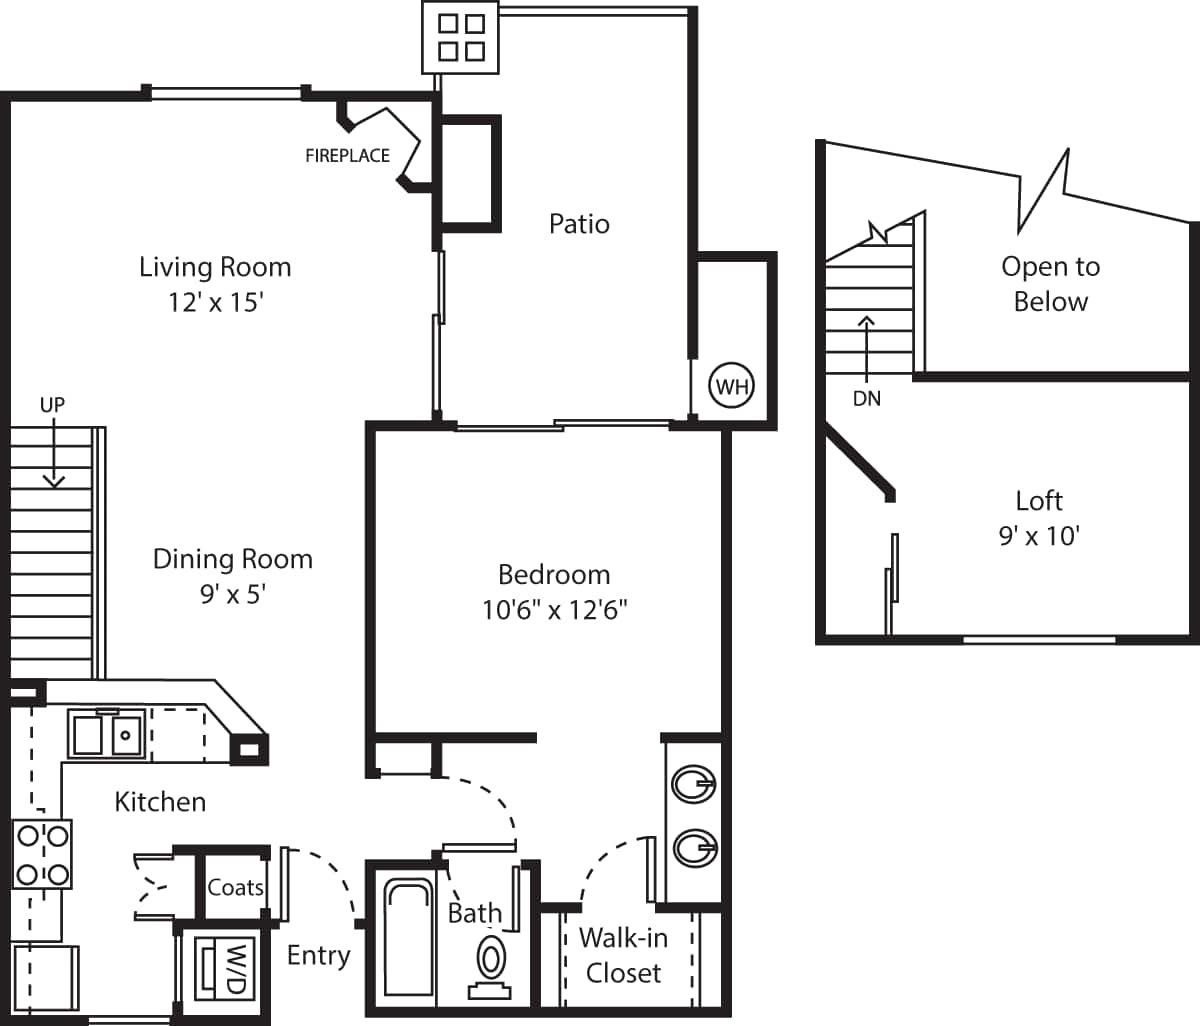 Floorplan diagram for Torino, showing 1 bedroom